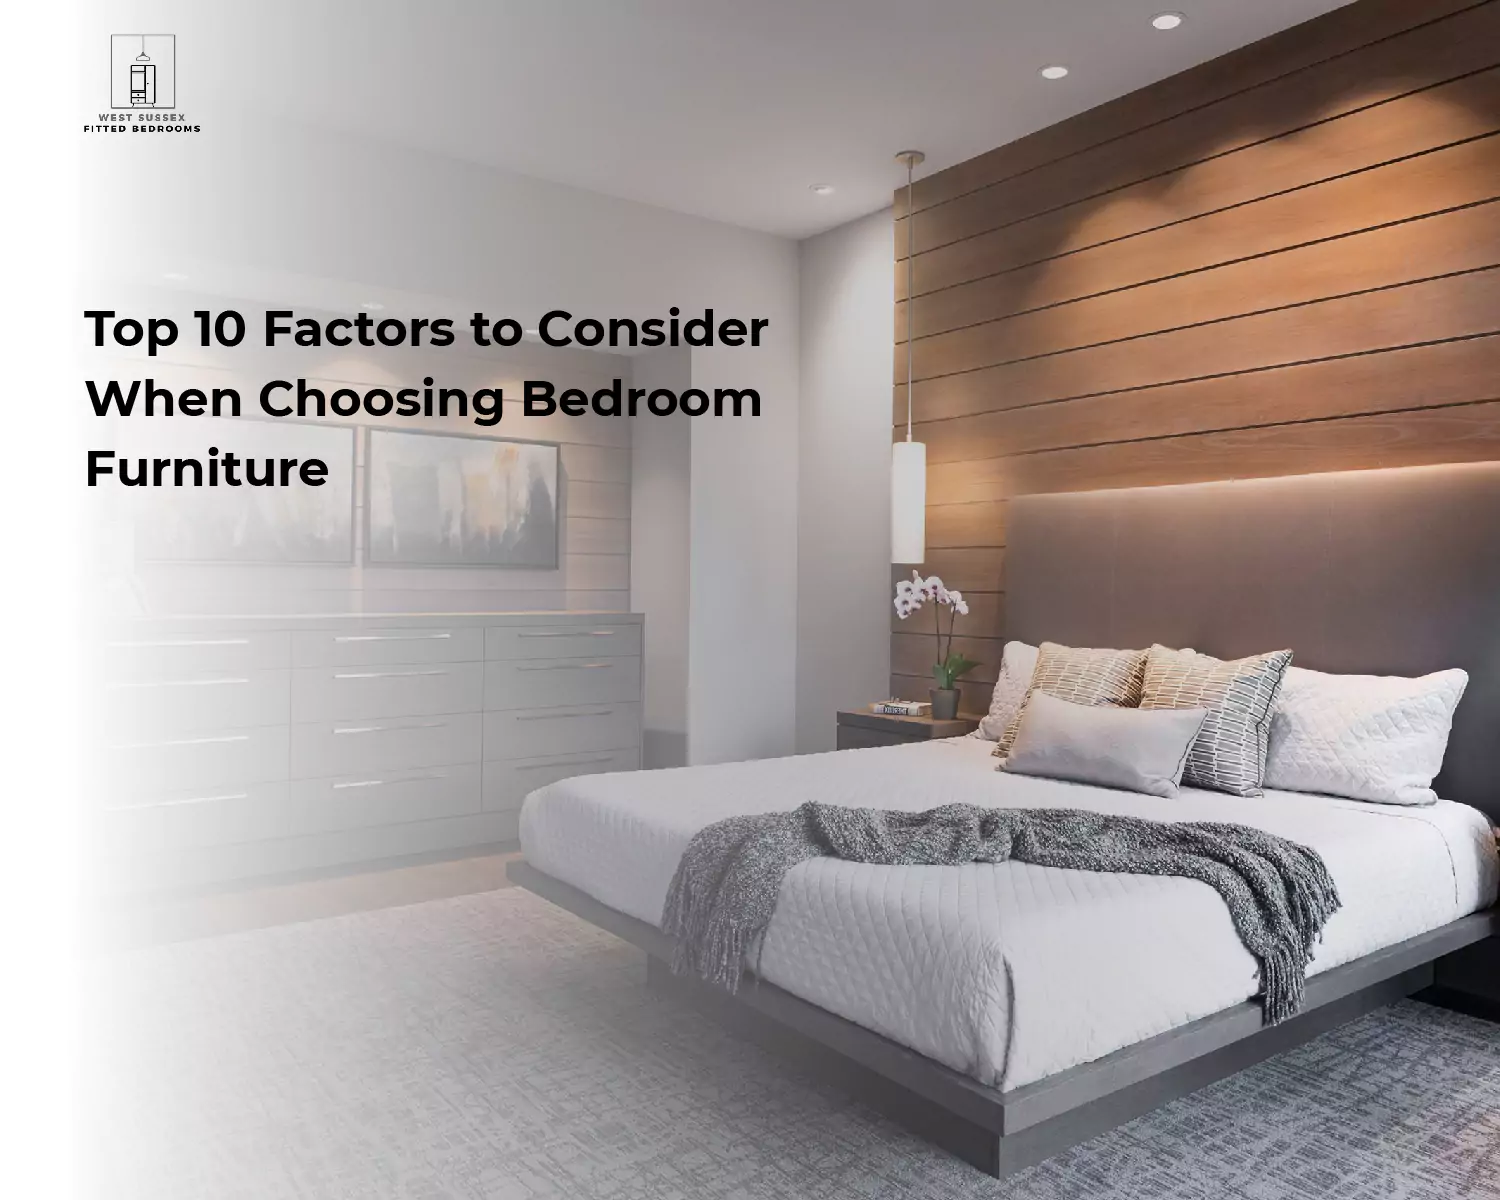 Top 10 Factors to Consider When Choosing Bedroom Furniture